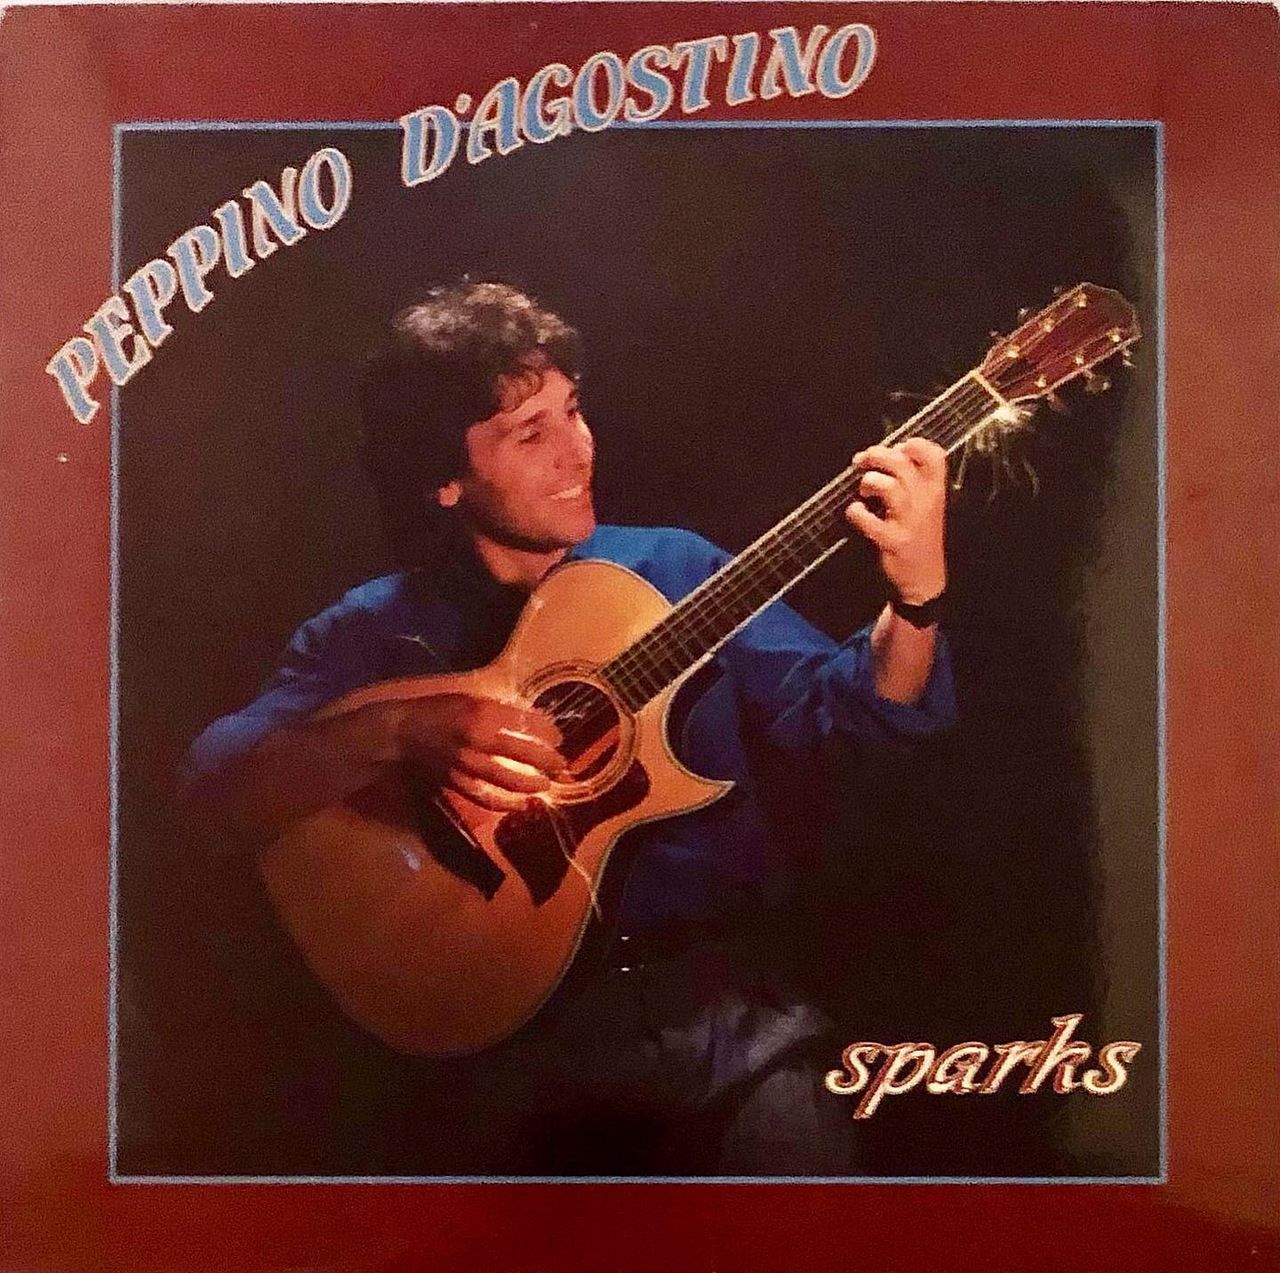 Peppino D'Agostino - Sparks cover album acoustic guitar